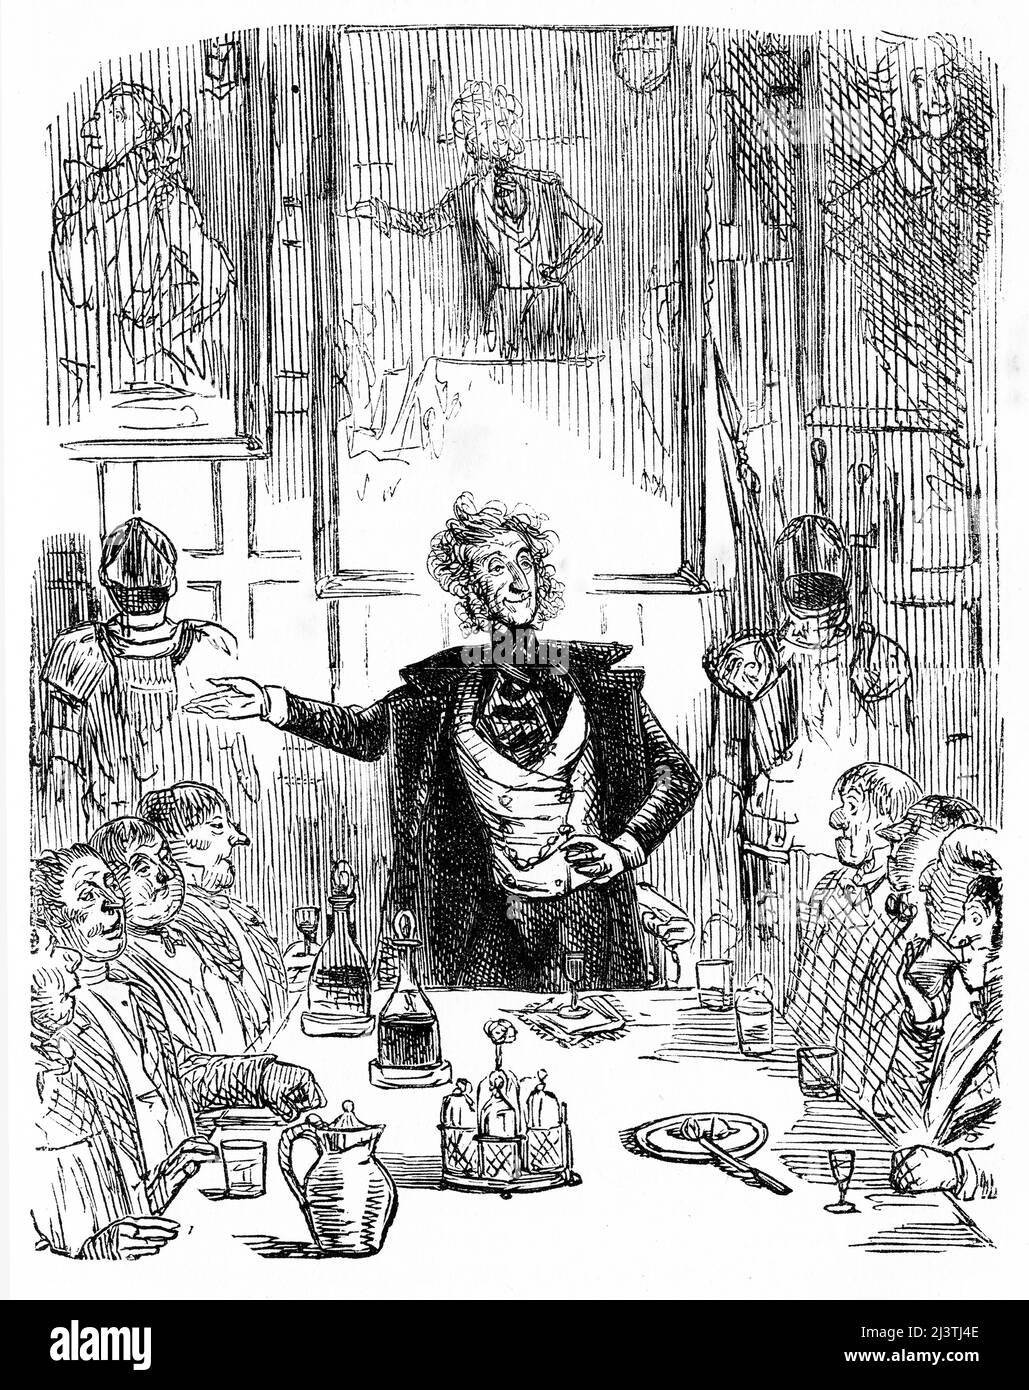 L'hôte s'adresse à ses invités du dîner à la table. Gravure en acier par John Leech de la tournée sportive de M. Sponge de Robert Smith Surtees, vers 1850 Banque D'Images